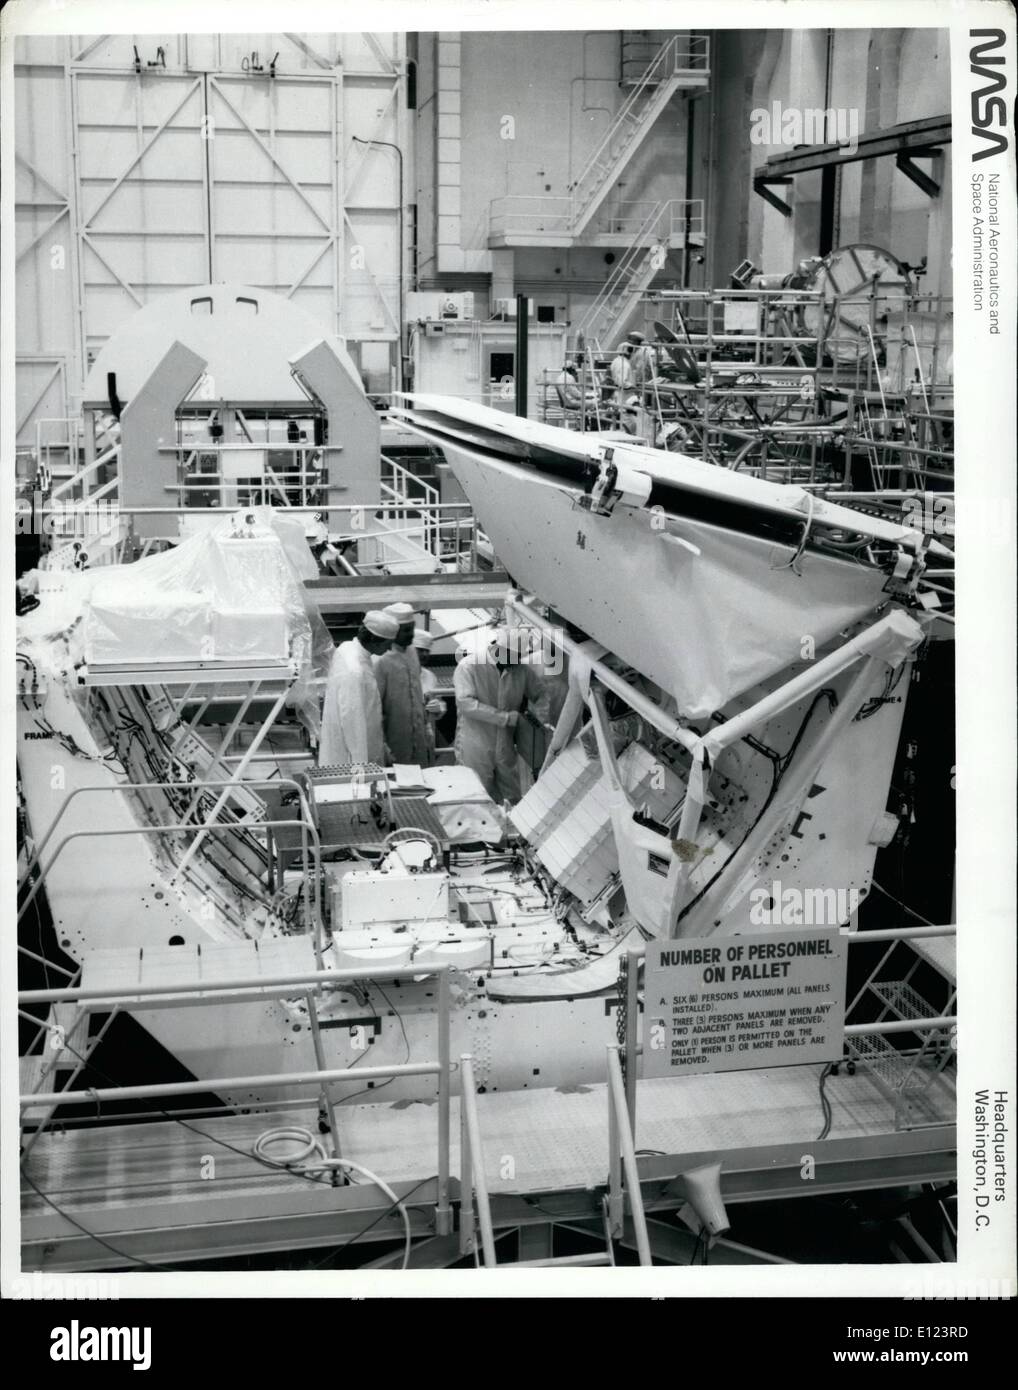 Giugno 06, 1984 - al centro spaziale Johnson, Fla. -- Missione Shuttle 41-G saranno dotati di un payload progettati per ciascuna osservazione, compresa la navetta Laboratorio Radar-1 (ex OSTA-3) mostrato qui durante i test funzionali di tre esperimenti. La caratteristica predominante di STRL-1 è l'Imaging Shuttle Radar-B, che è una versione ridisegnata del SIR-una antenna volato sulla navetta seconda prova di volo. SIB-B ha sezioni di ripiegamento, e può anche essere inclinato per il puntamento preciso a funzioni di messa a terra Foto Stock